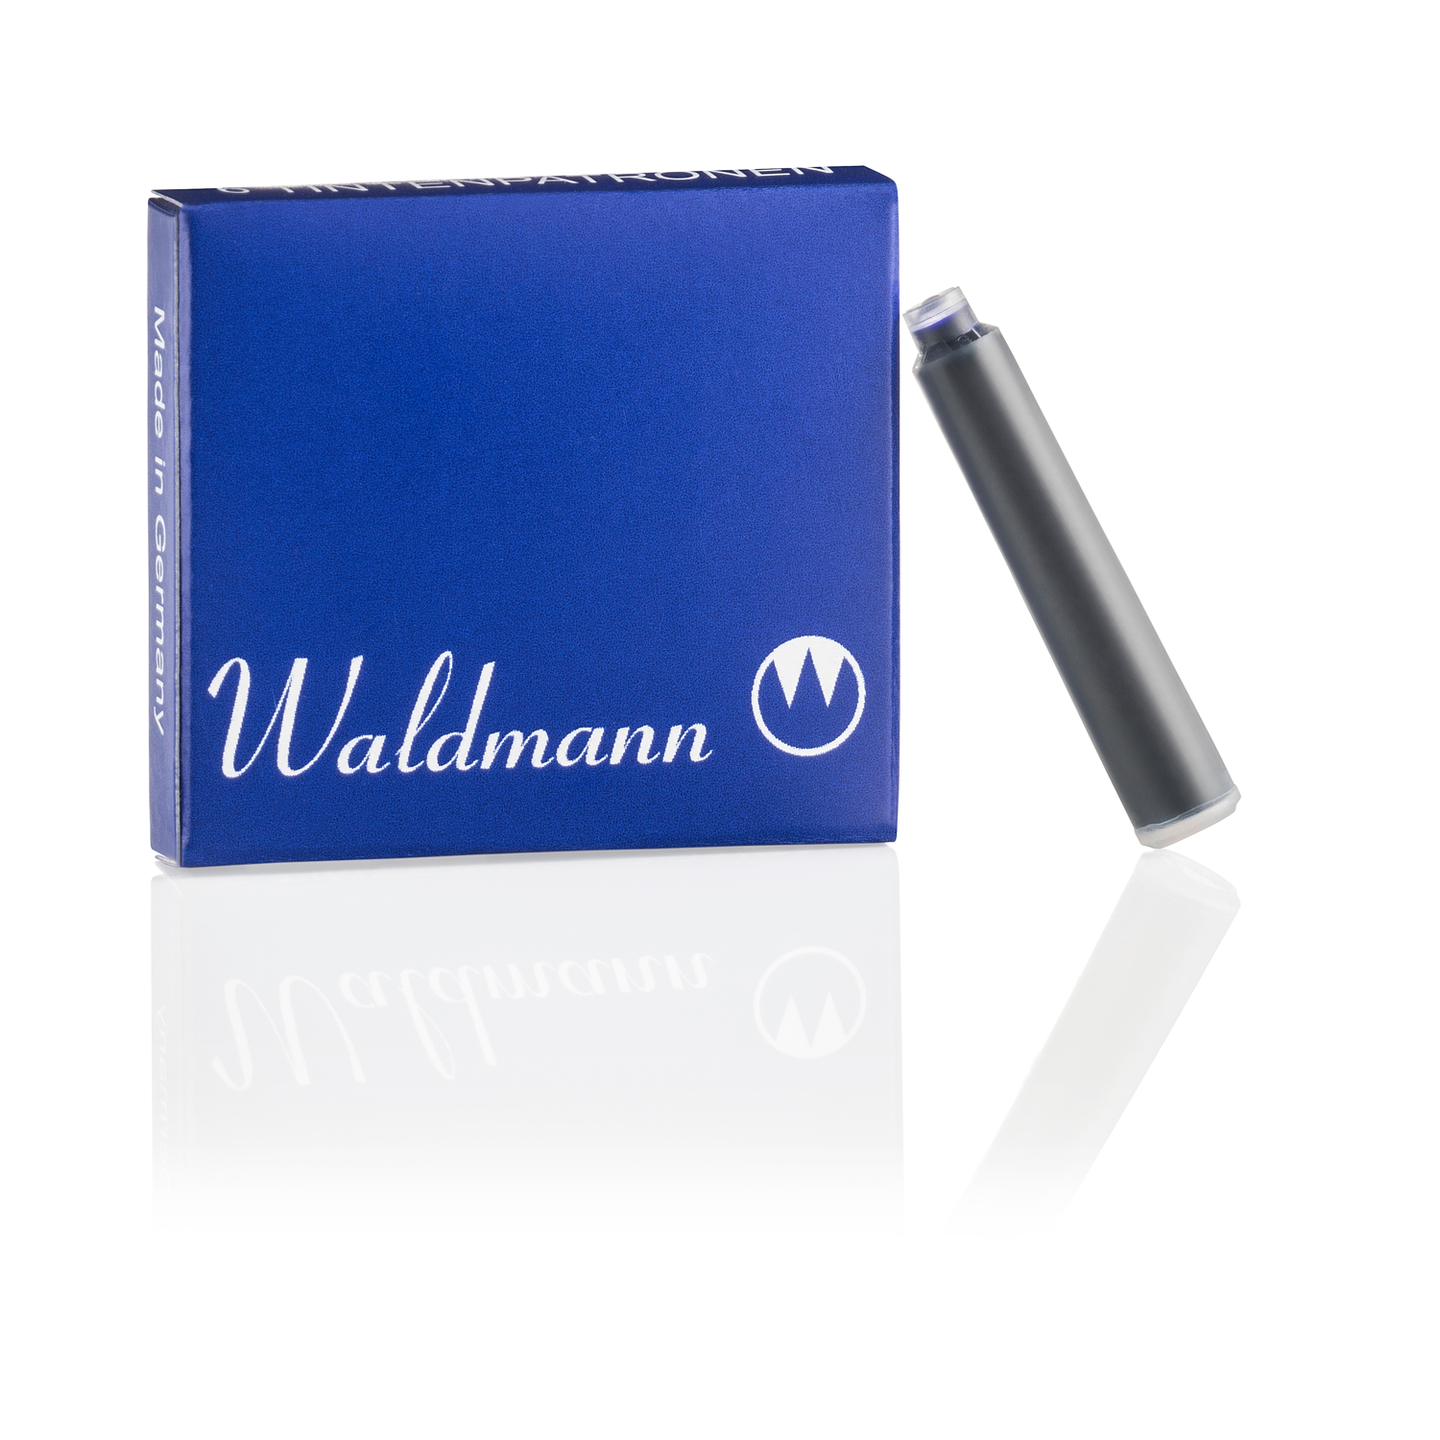 Waldmann Packung mit 6 Tintenpatronen Blau